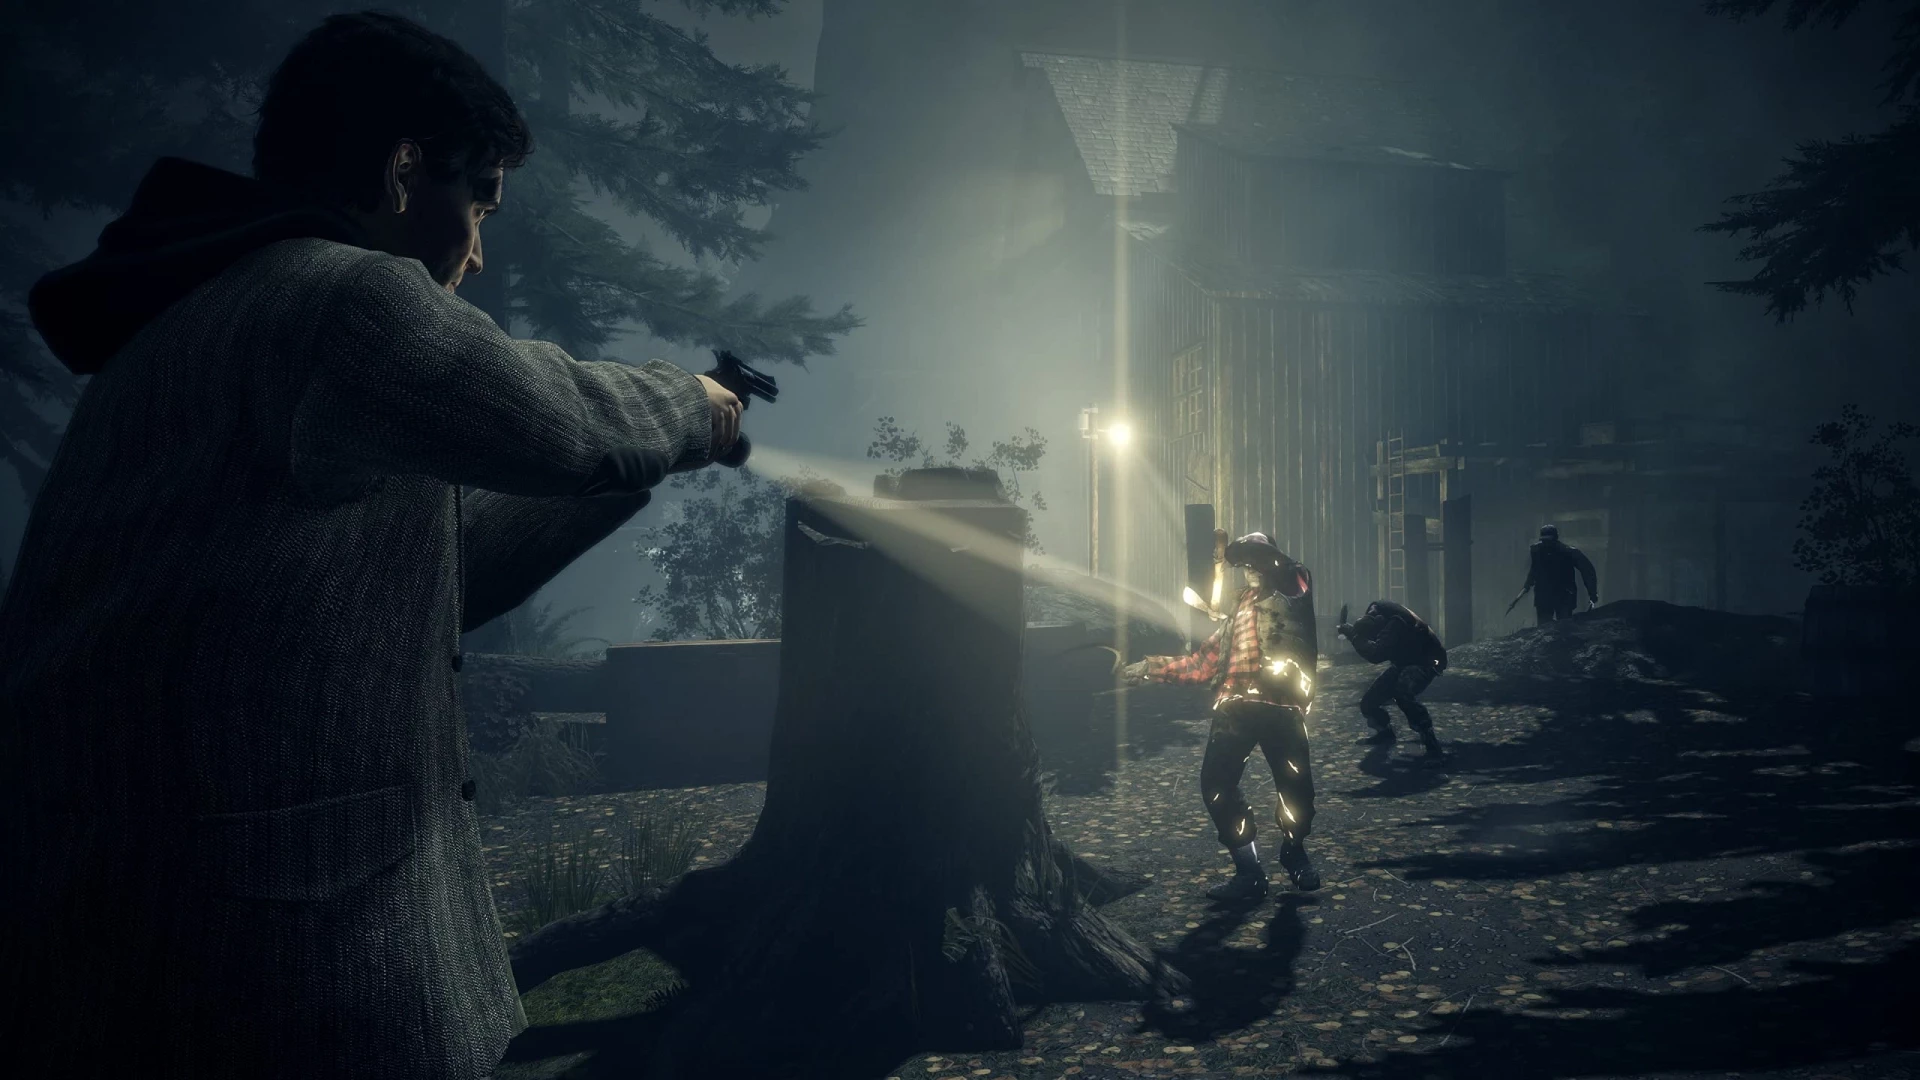 Alan Wake Remastered voor de PlayStation 4 kopen op nedgame.nl